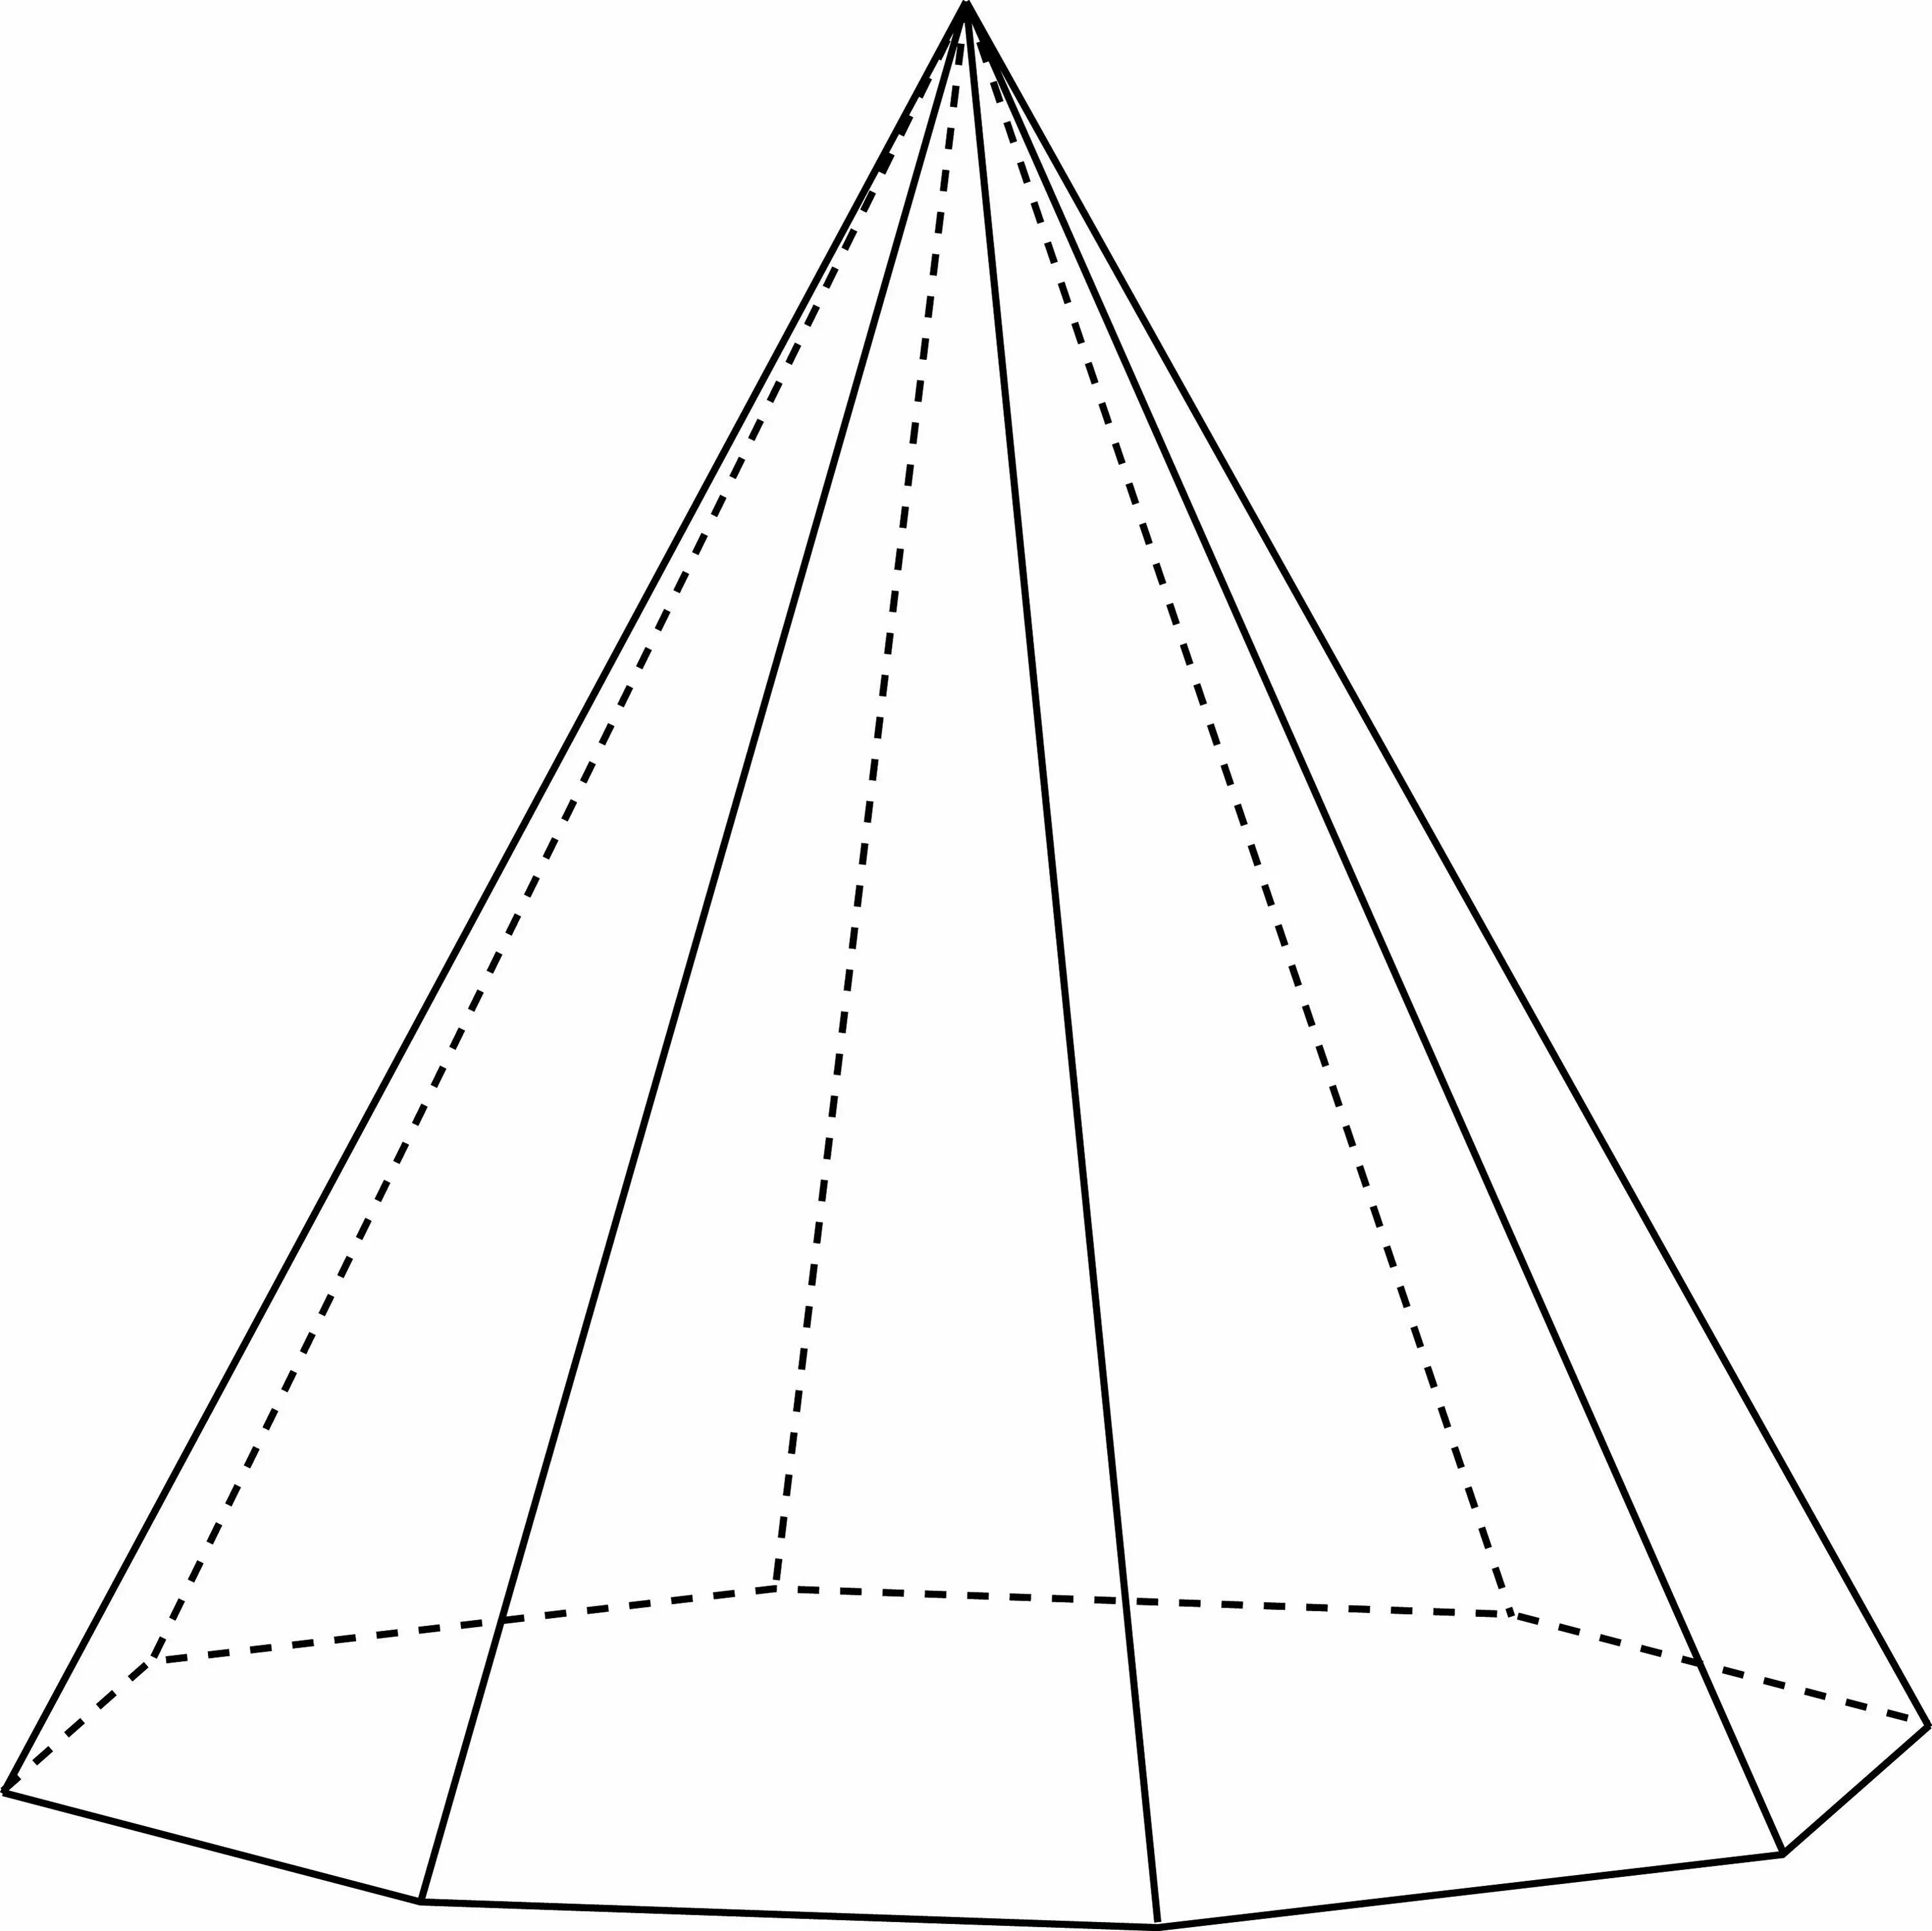 Правильная семиугольная пирамида. Правильная восьмиугольная пирамида. Девятиугольная пирамида. Усечённая шестиугольная пирамида.